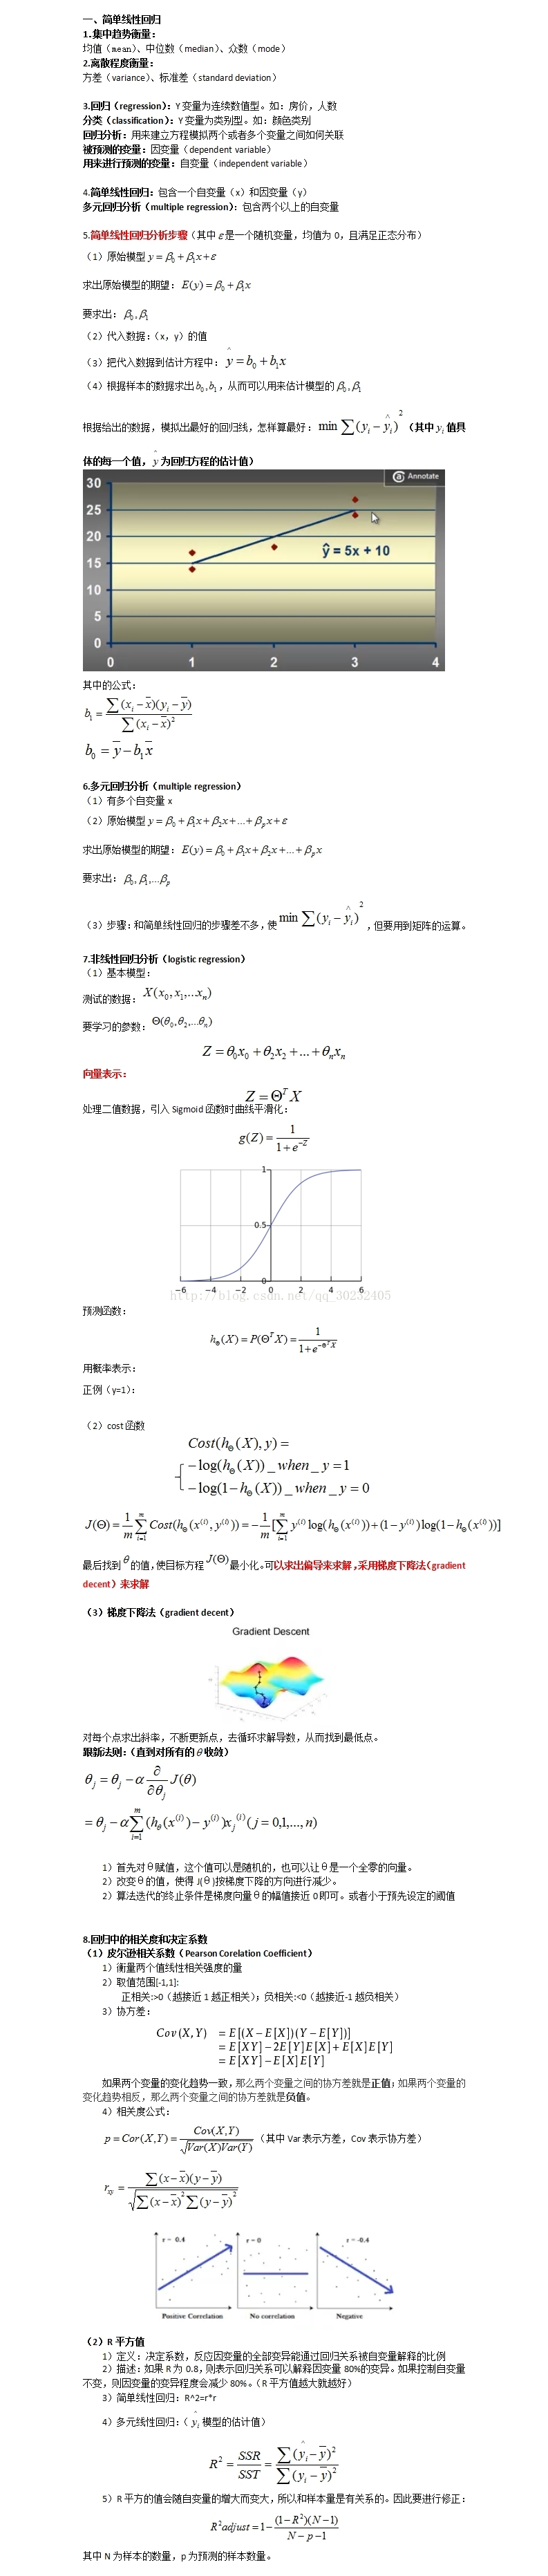 回归方程分析（线性回归+logistic+相似度）_梯度下降法